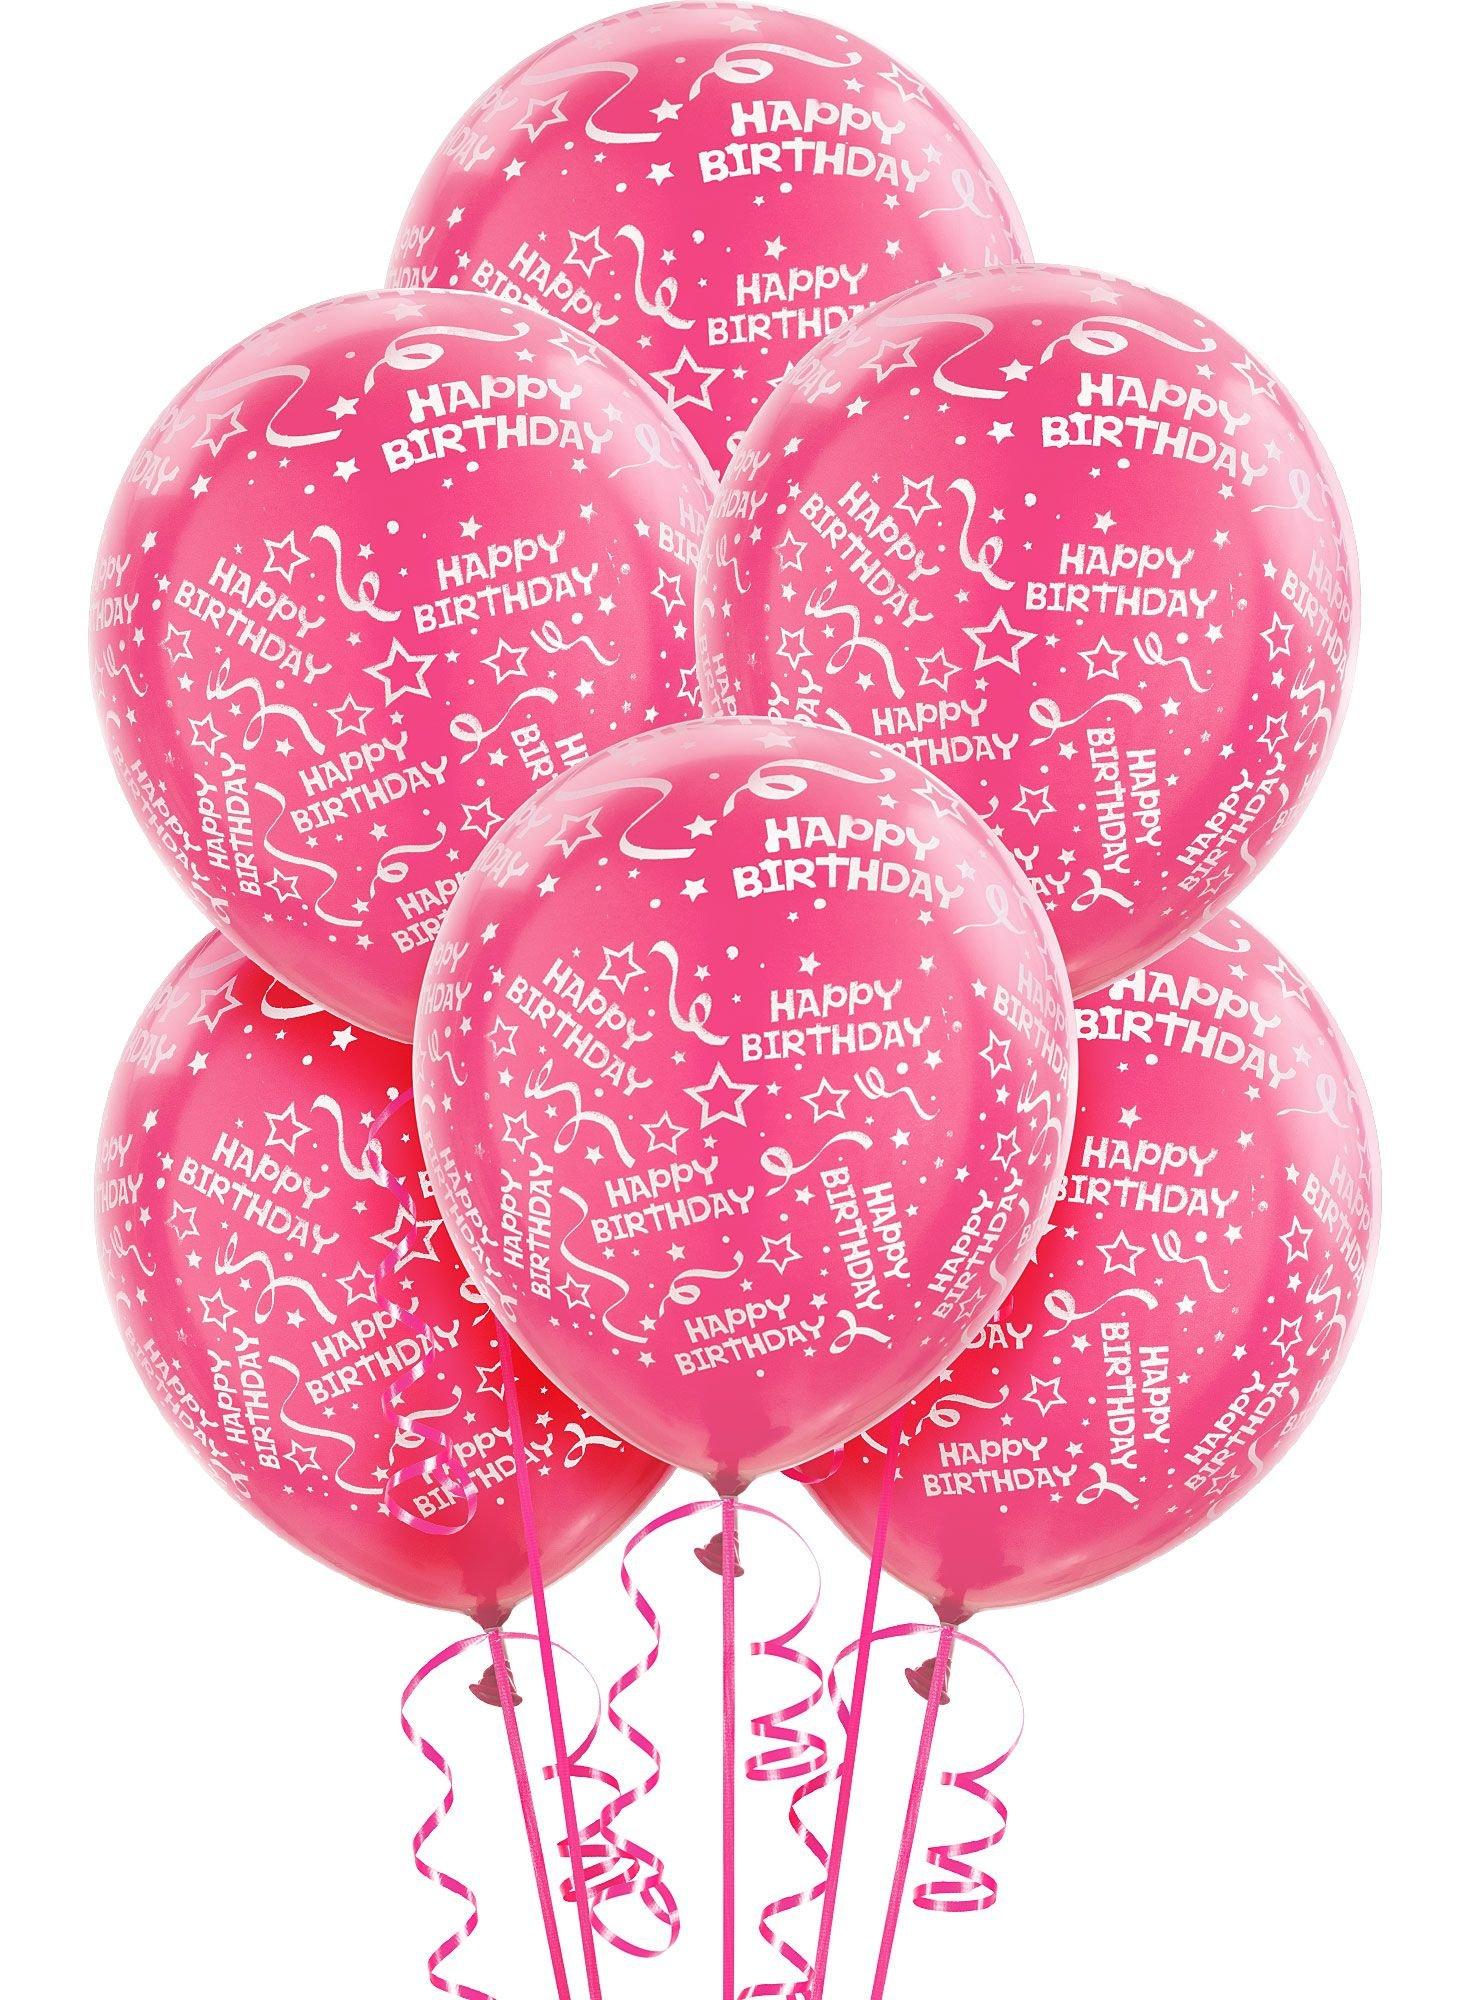 Ballon en alu Happy Birthday Pretty Pink 30 45 cm à prix minis